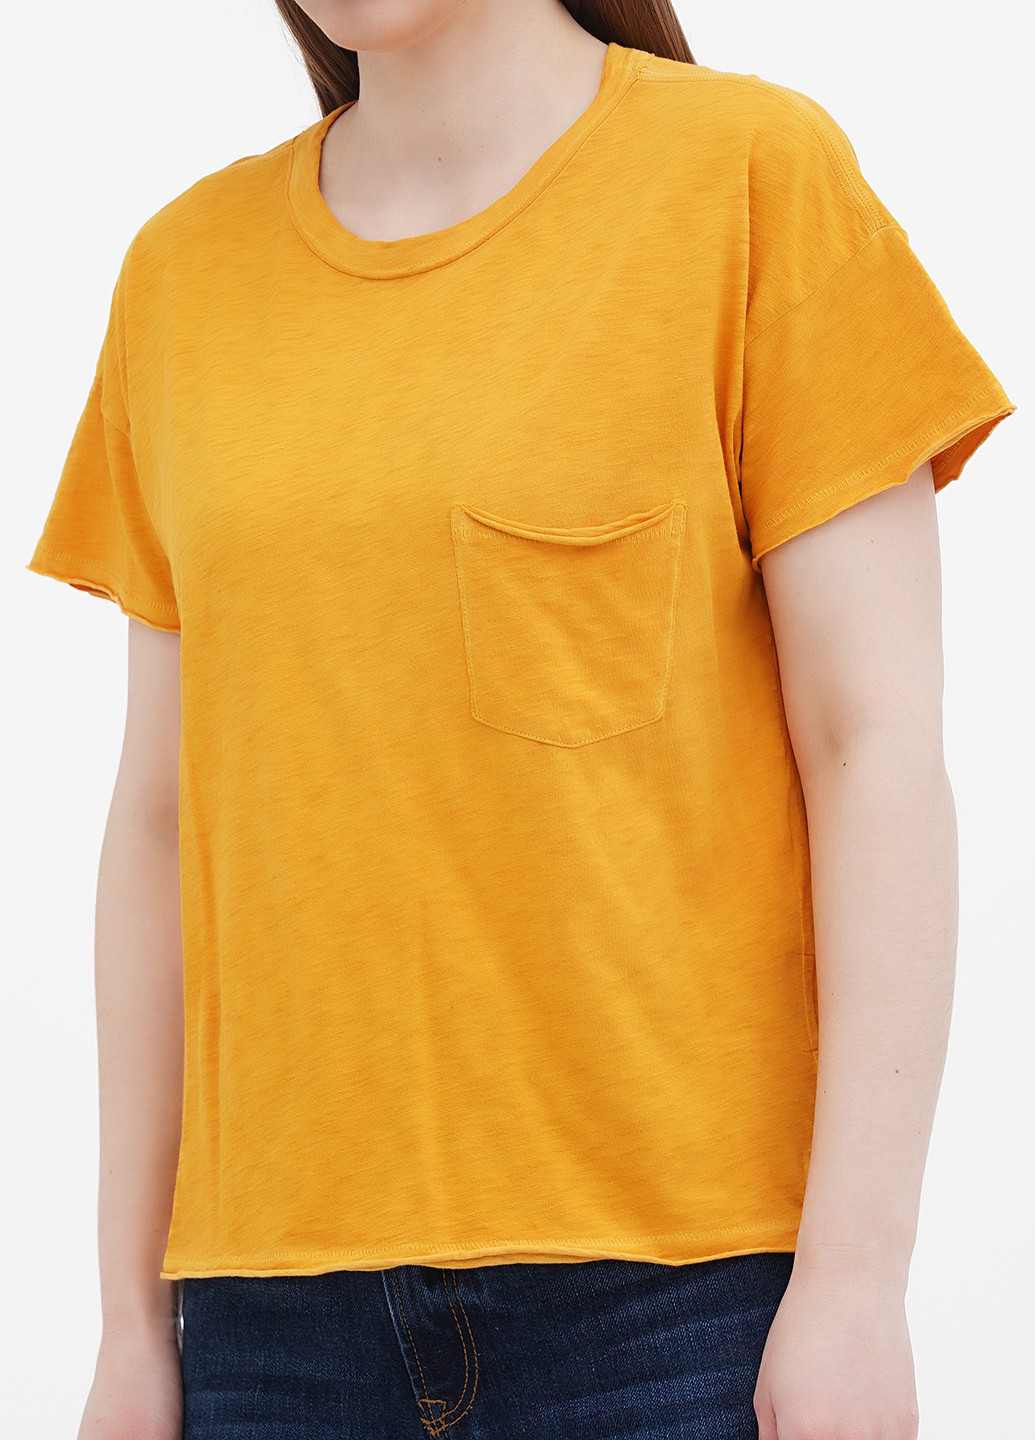 Жовта літня футболка Rag&Bone